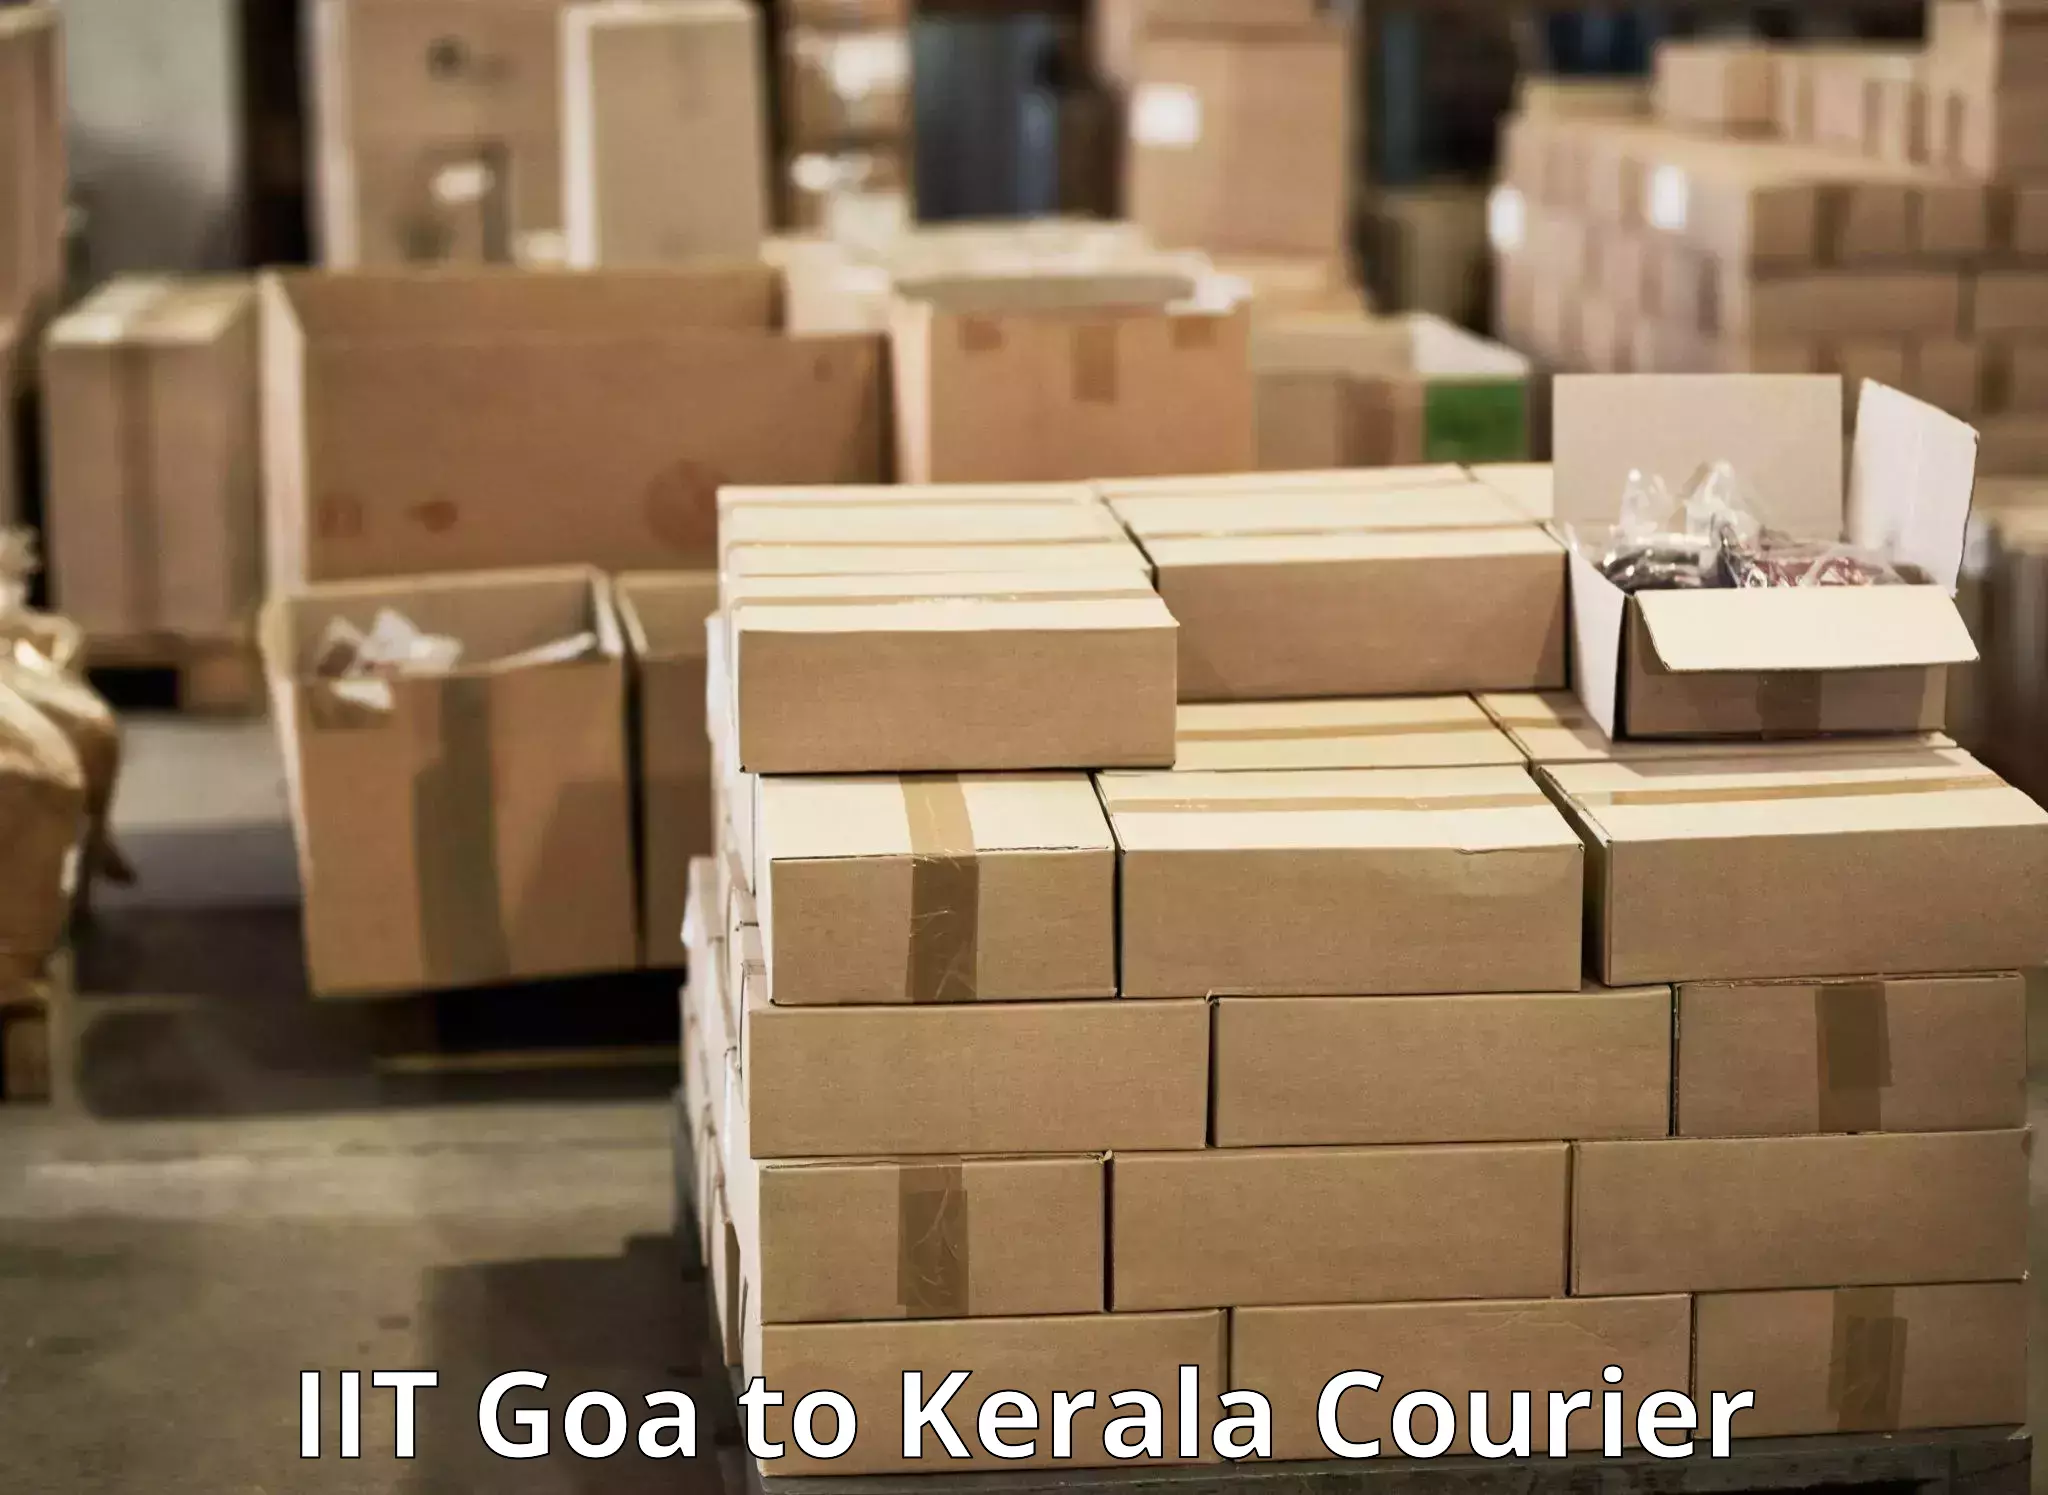 Door-to-door freight service IIT Goa to Kerala